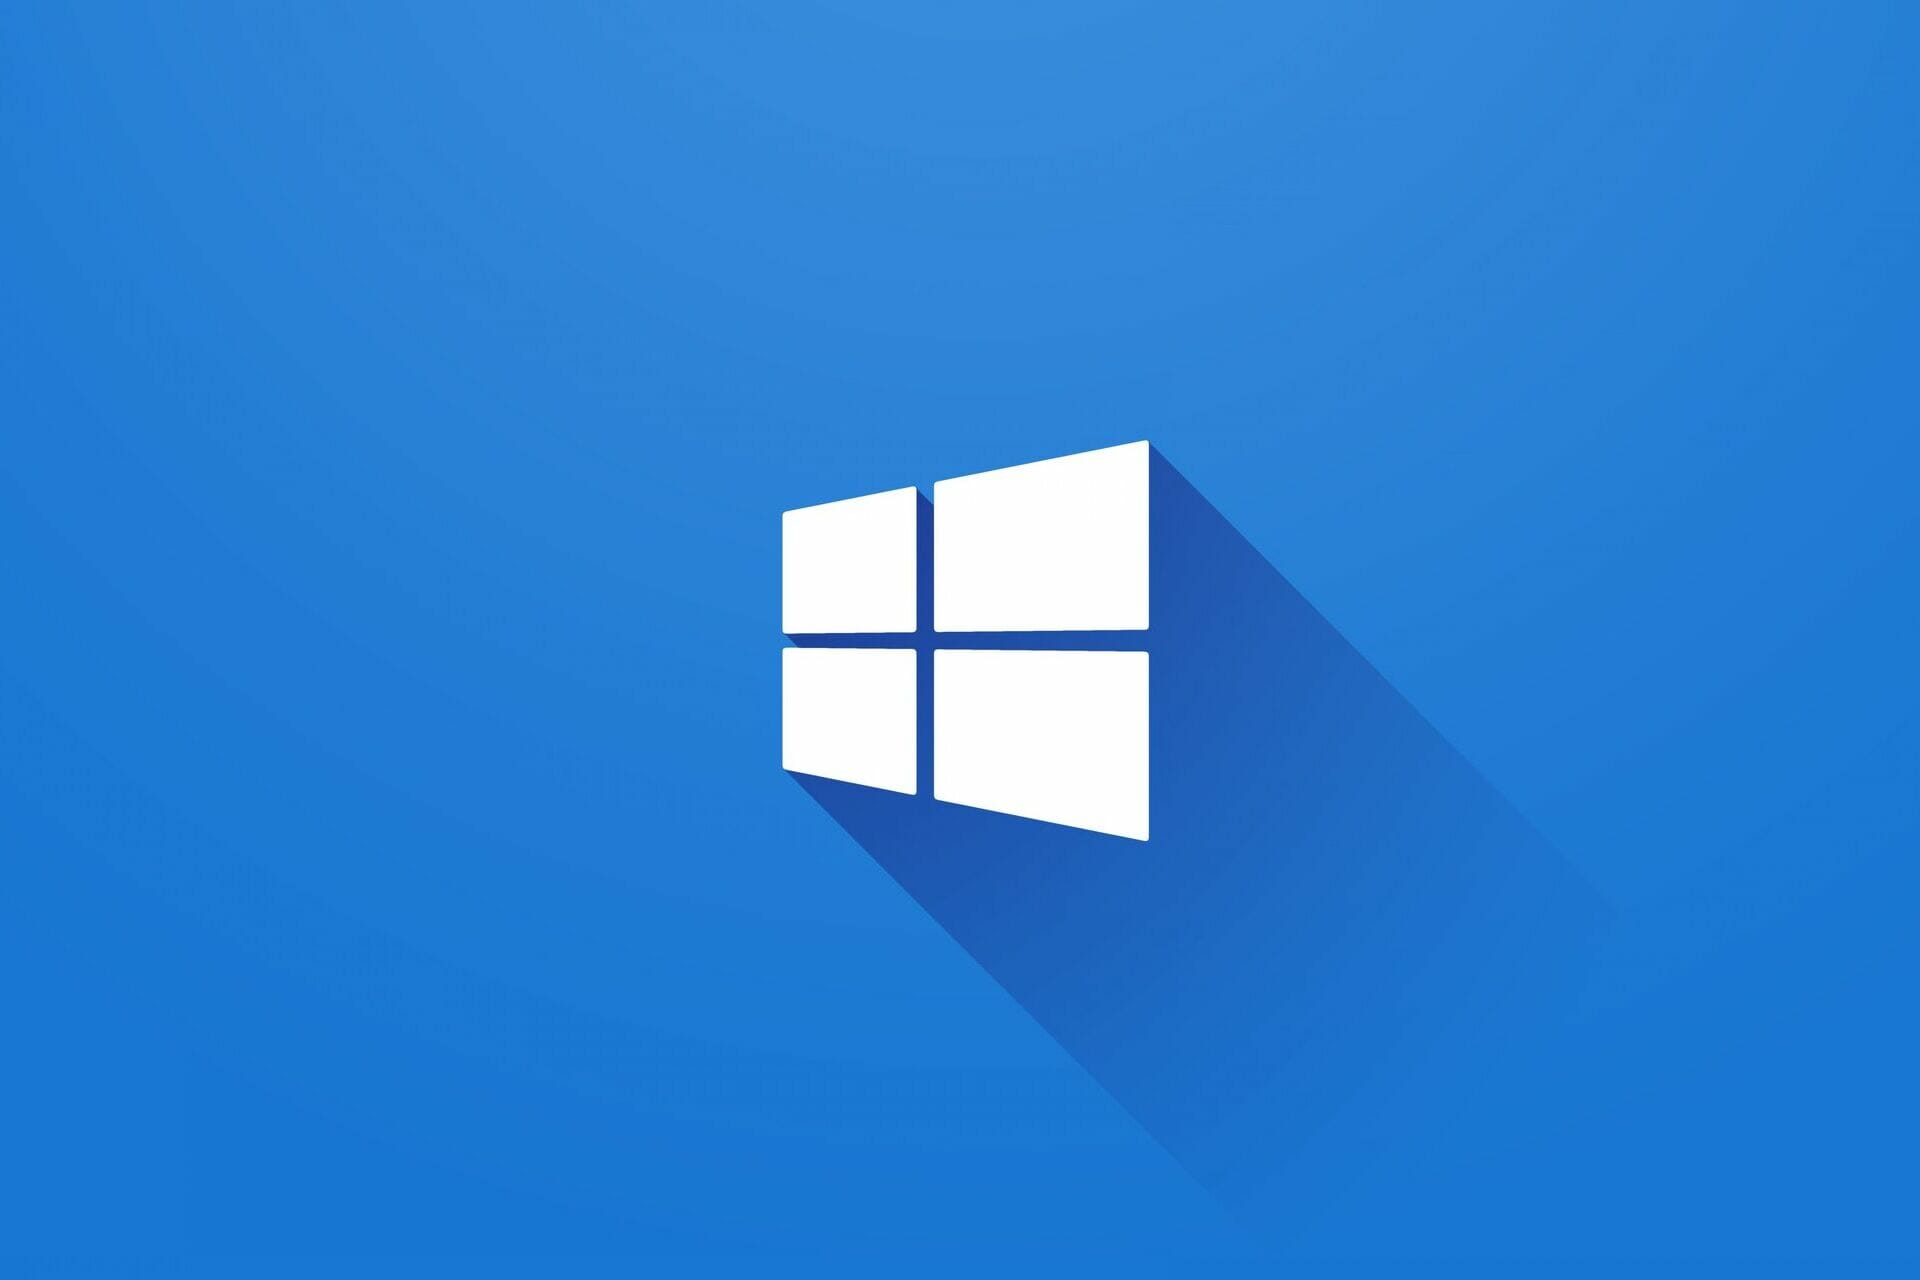 Cách tắt tiếng ứng dụng trên Windows 10 giúp bạn kiểm soát được âm thanh phát ra từ các ứng dụng trên máy tính. Hãy xem hình ảnh liên quan đến cách tắt tiếng ứng dụng trong Windows 10 để bạn có thể hoàn thiện hơn kỹ năng sử dụng máy tính của mình.